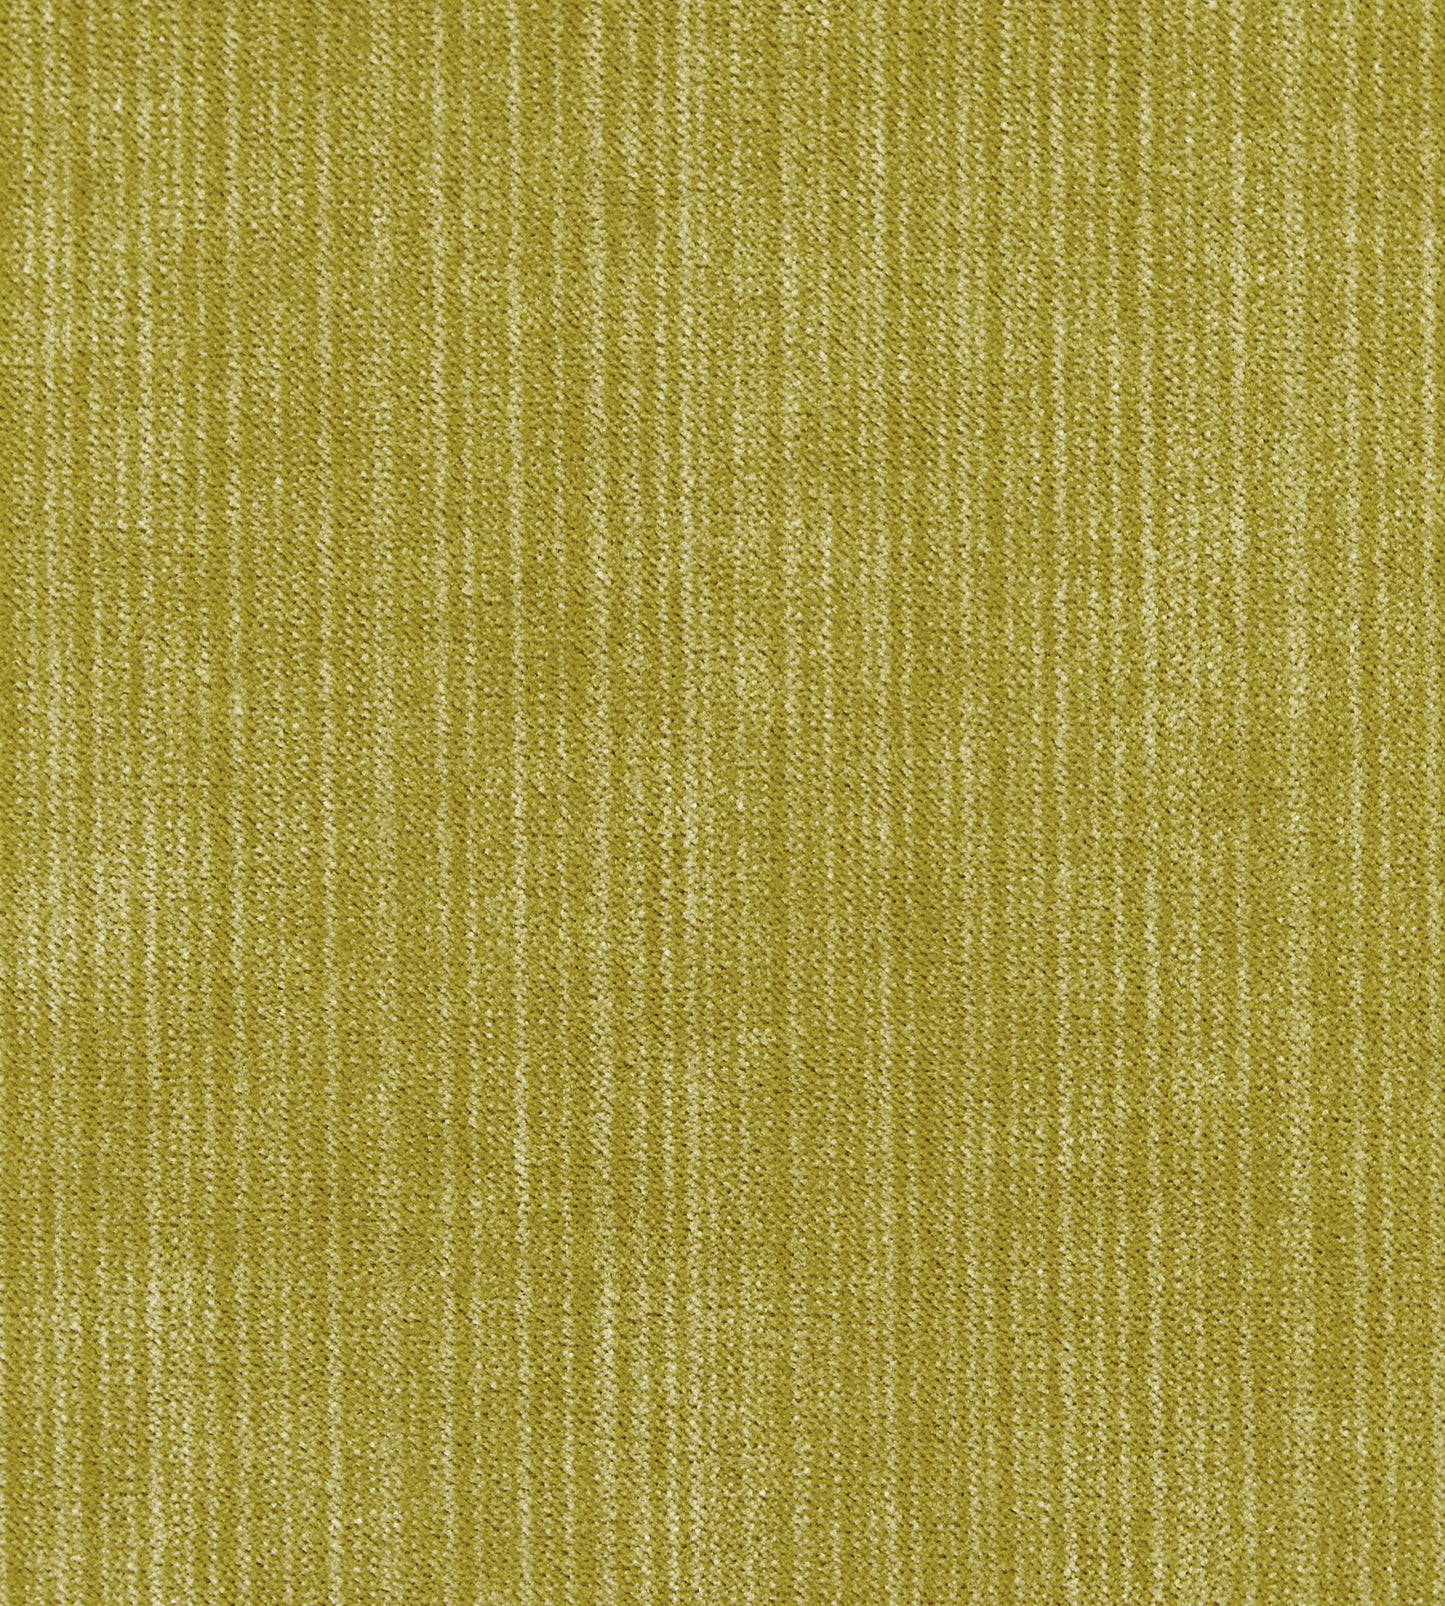 Purchase Boris Kroll Fabric Item SC 0006K65111, Strie Velvet Chartreuse 1